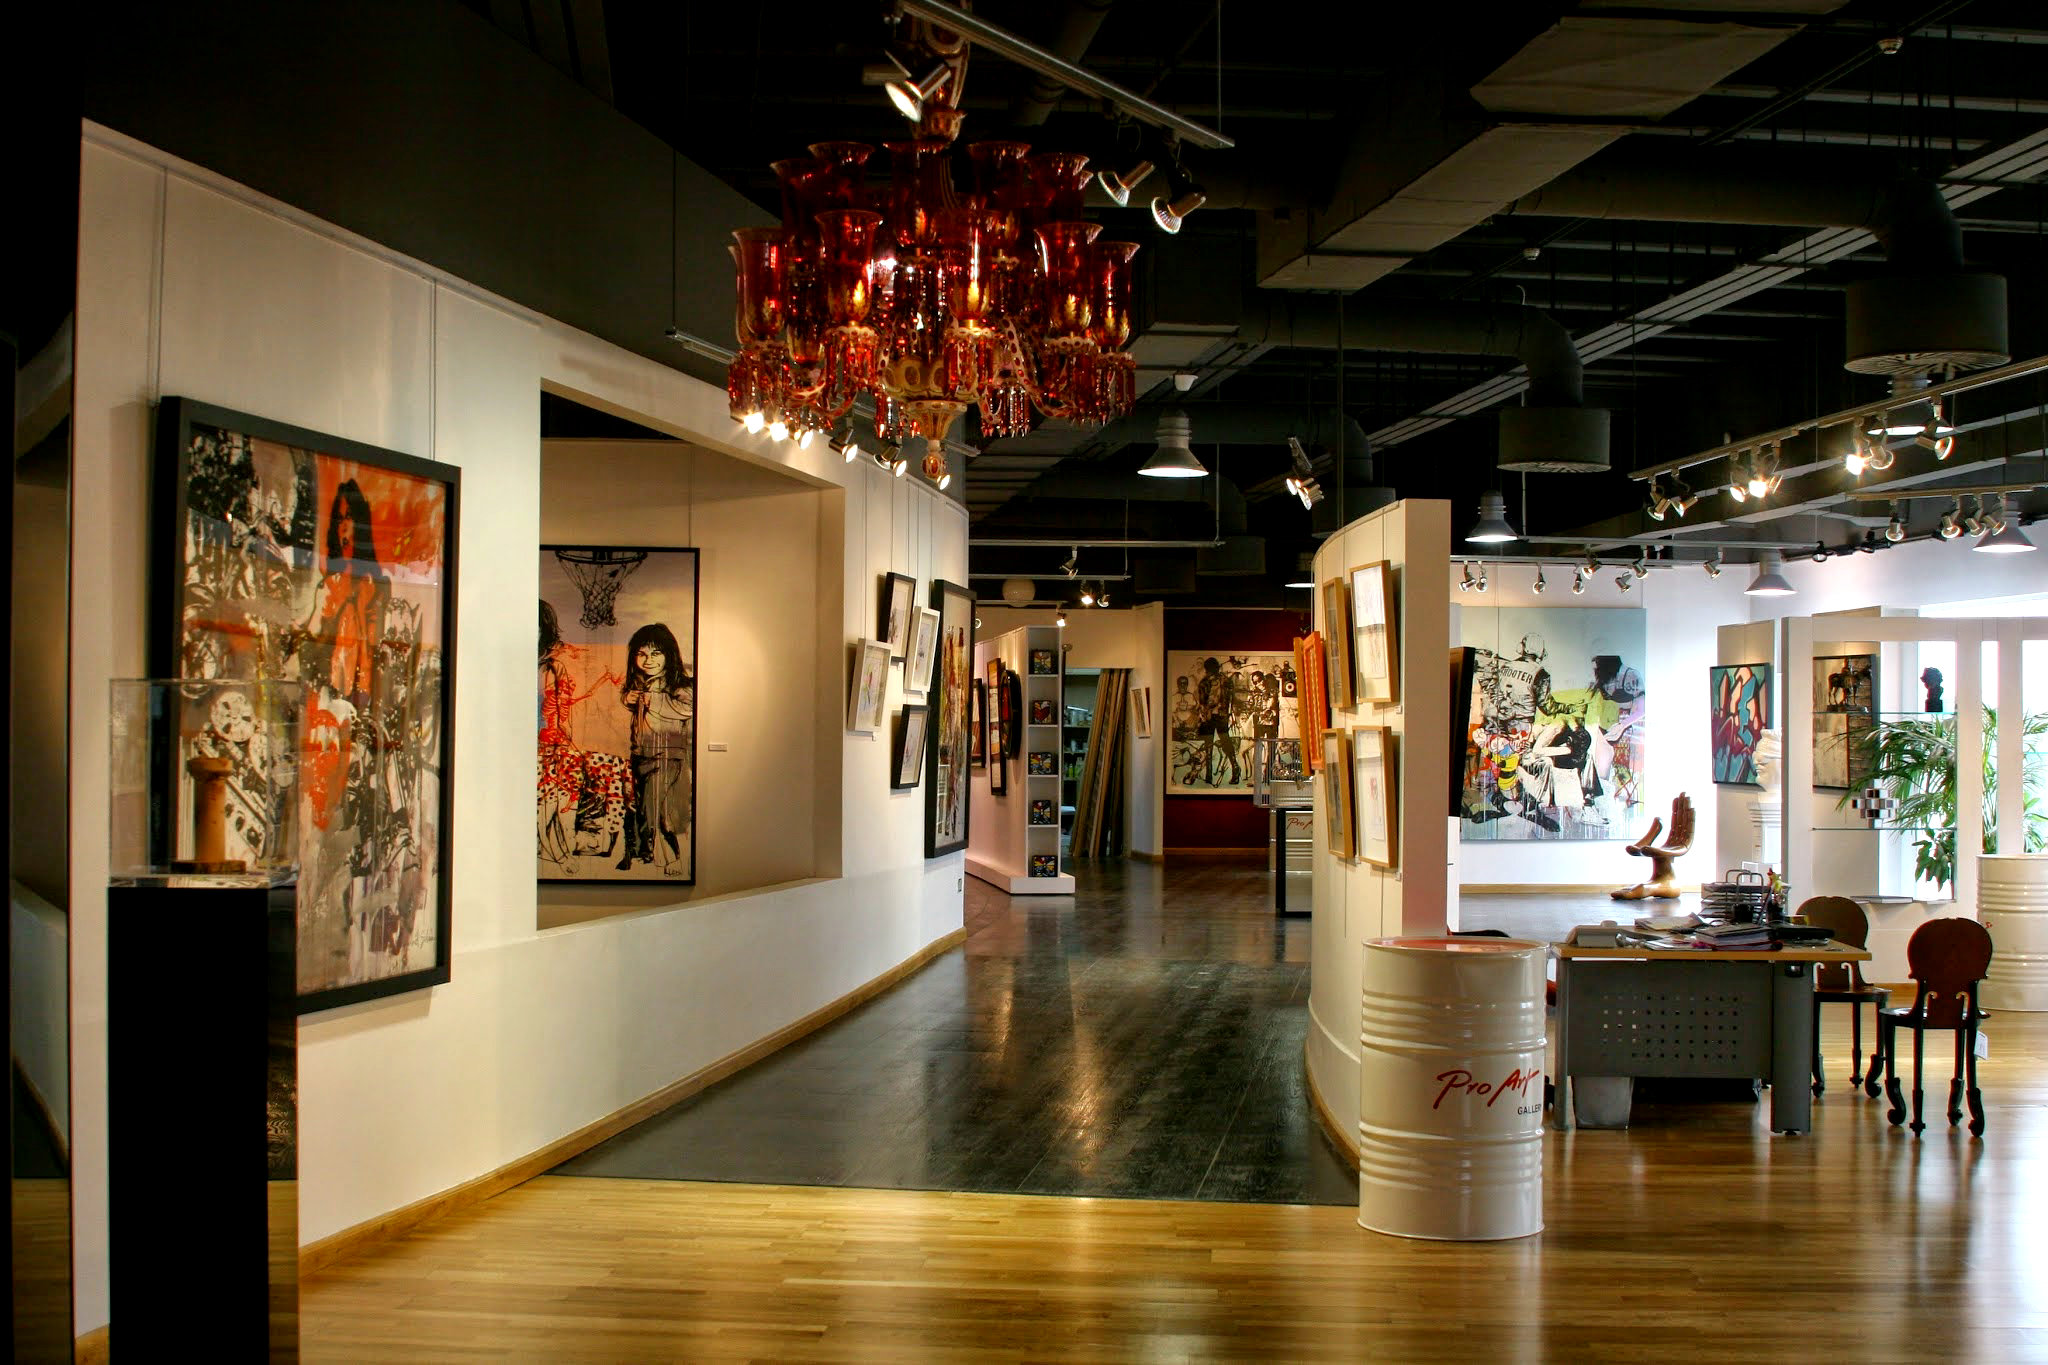 ProArt Gallery